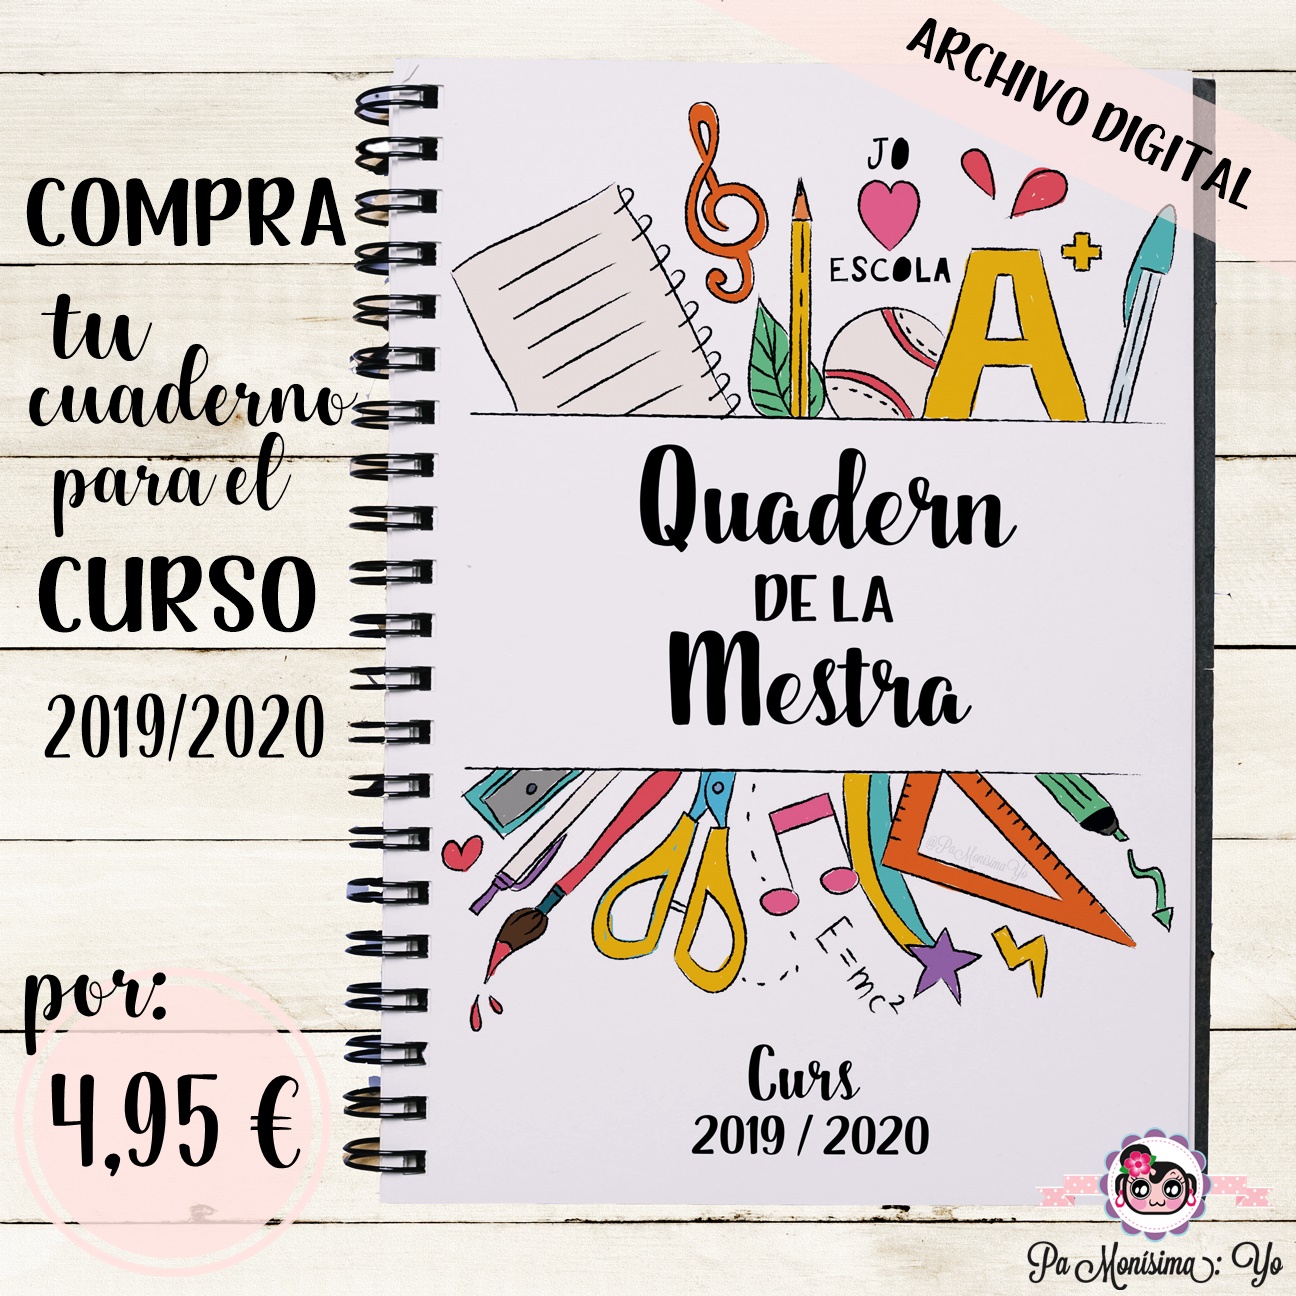 Pa Monísima: Yo: Cuaderno de la Maestra imprimible curso 2019-2020